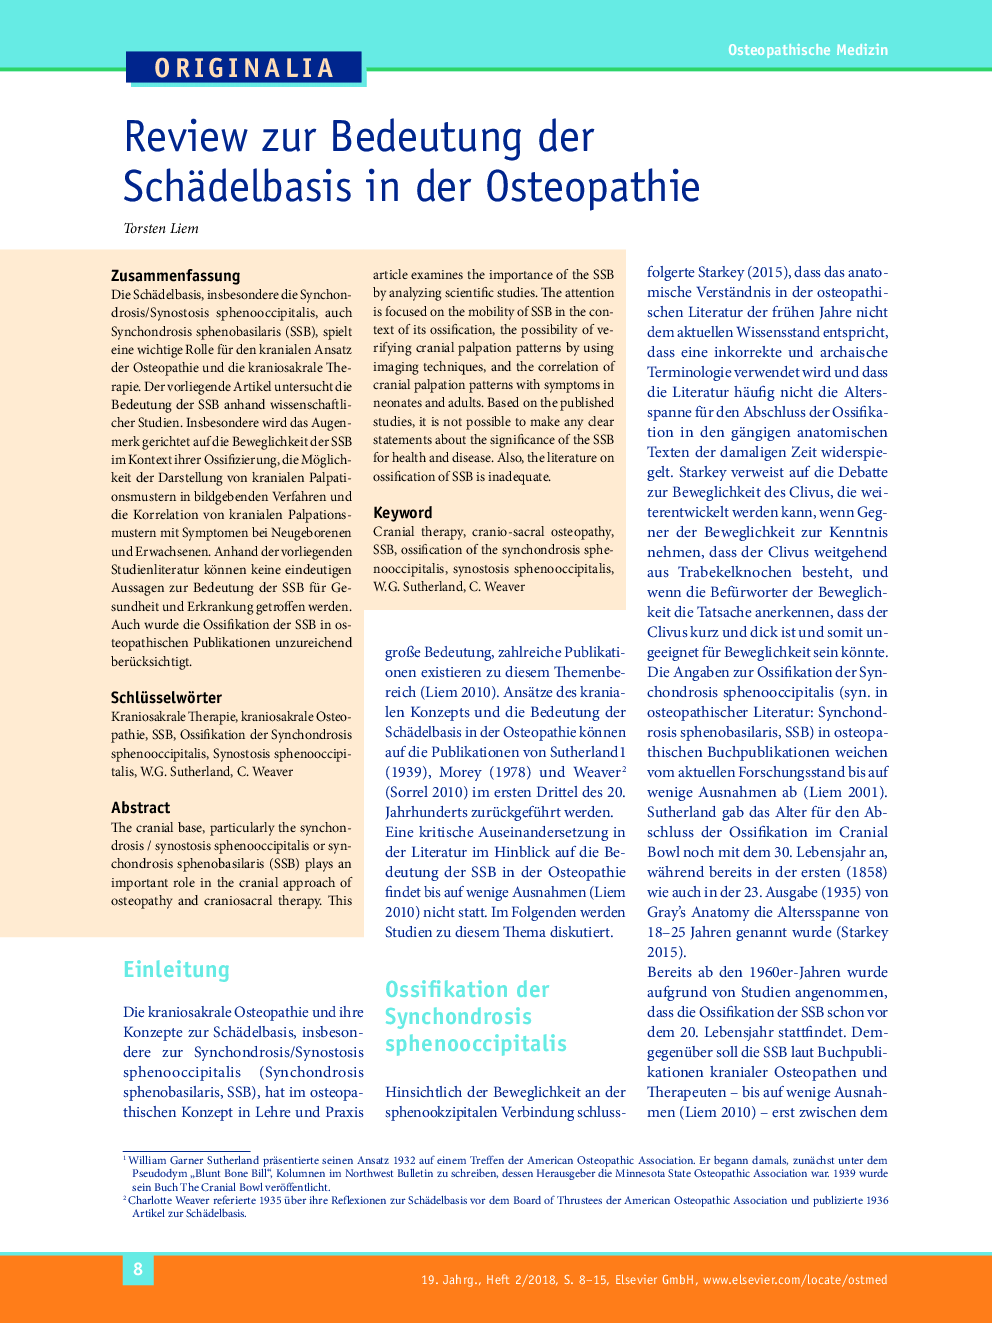 Review zur Bedeutung der Schädelbasis in der Osteopathie